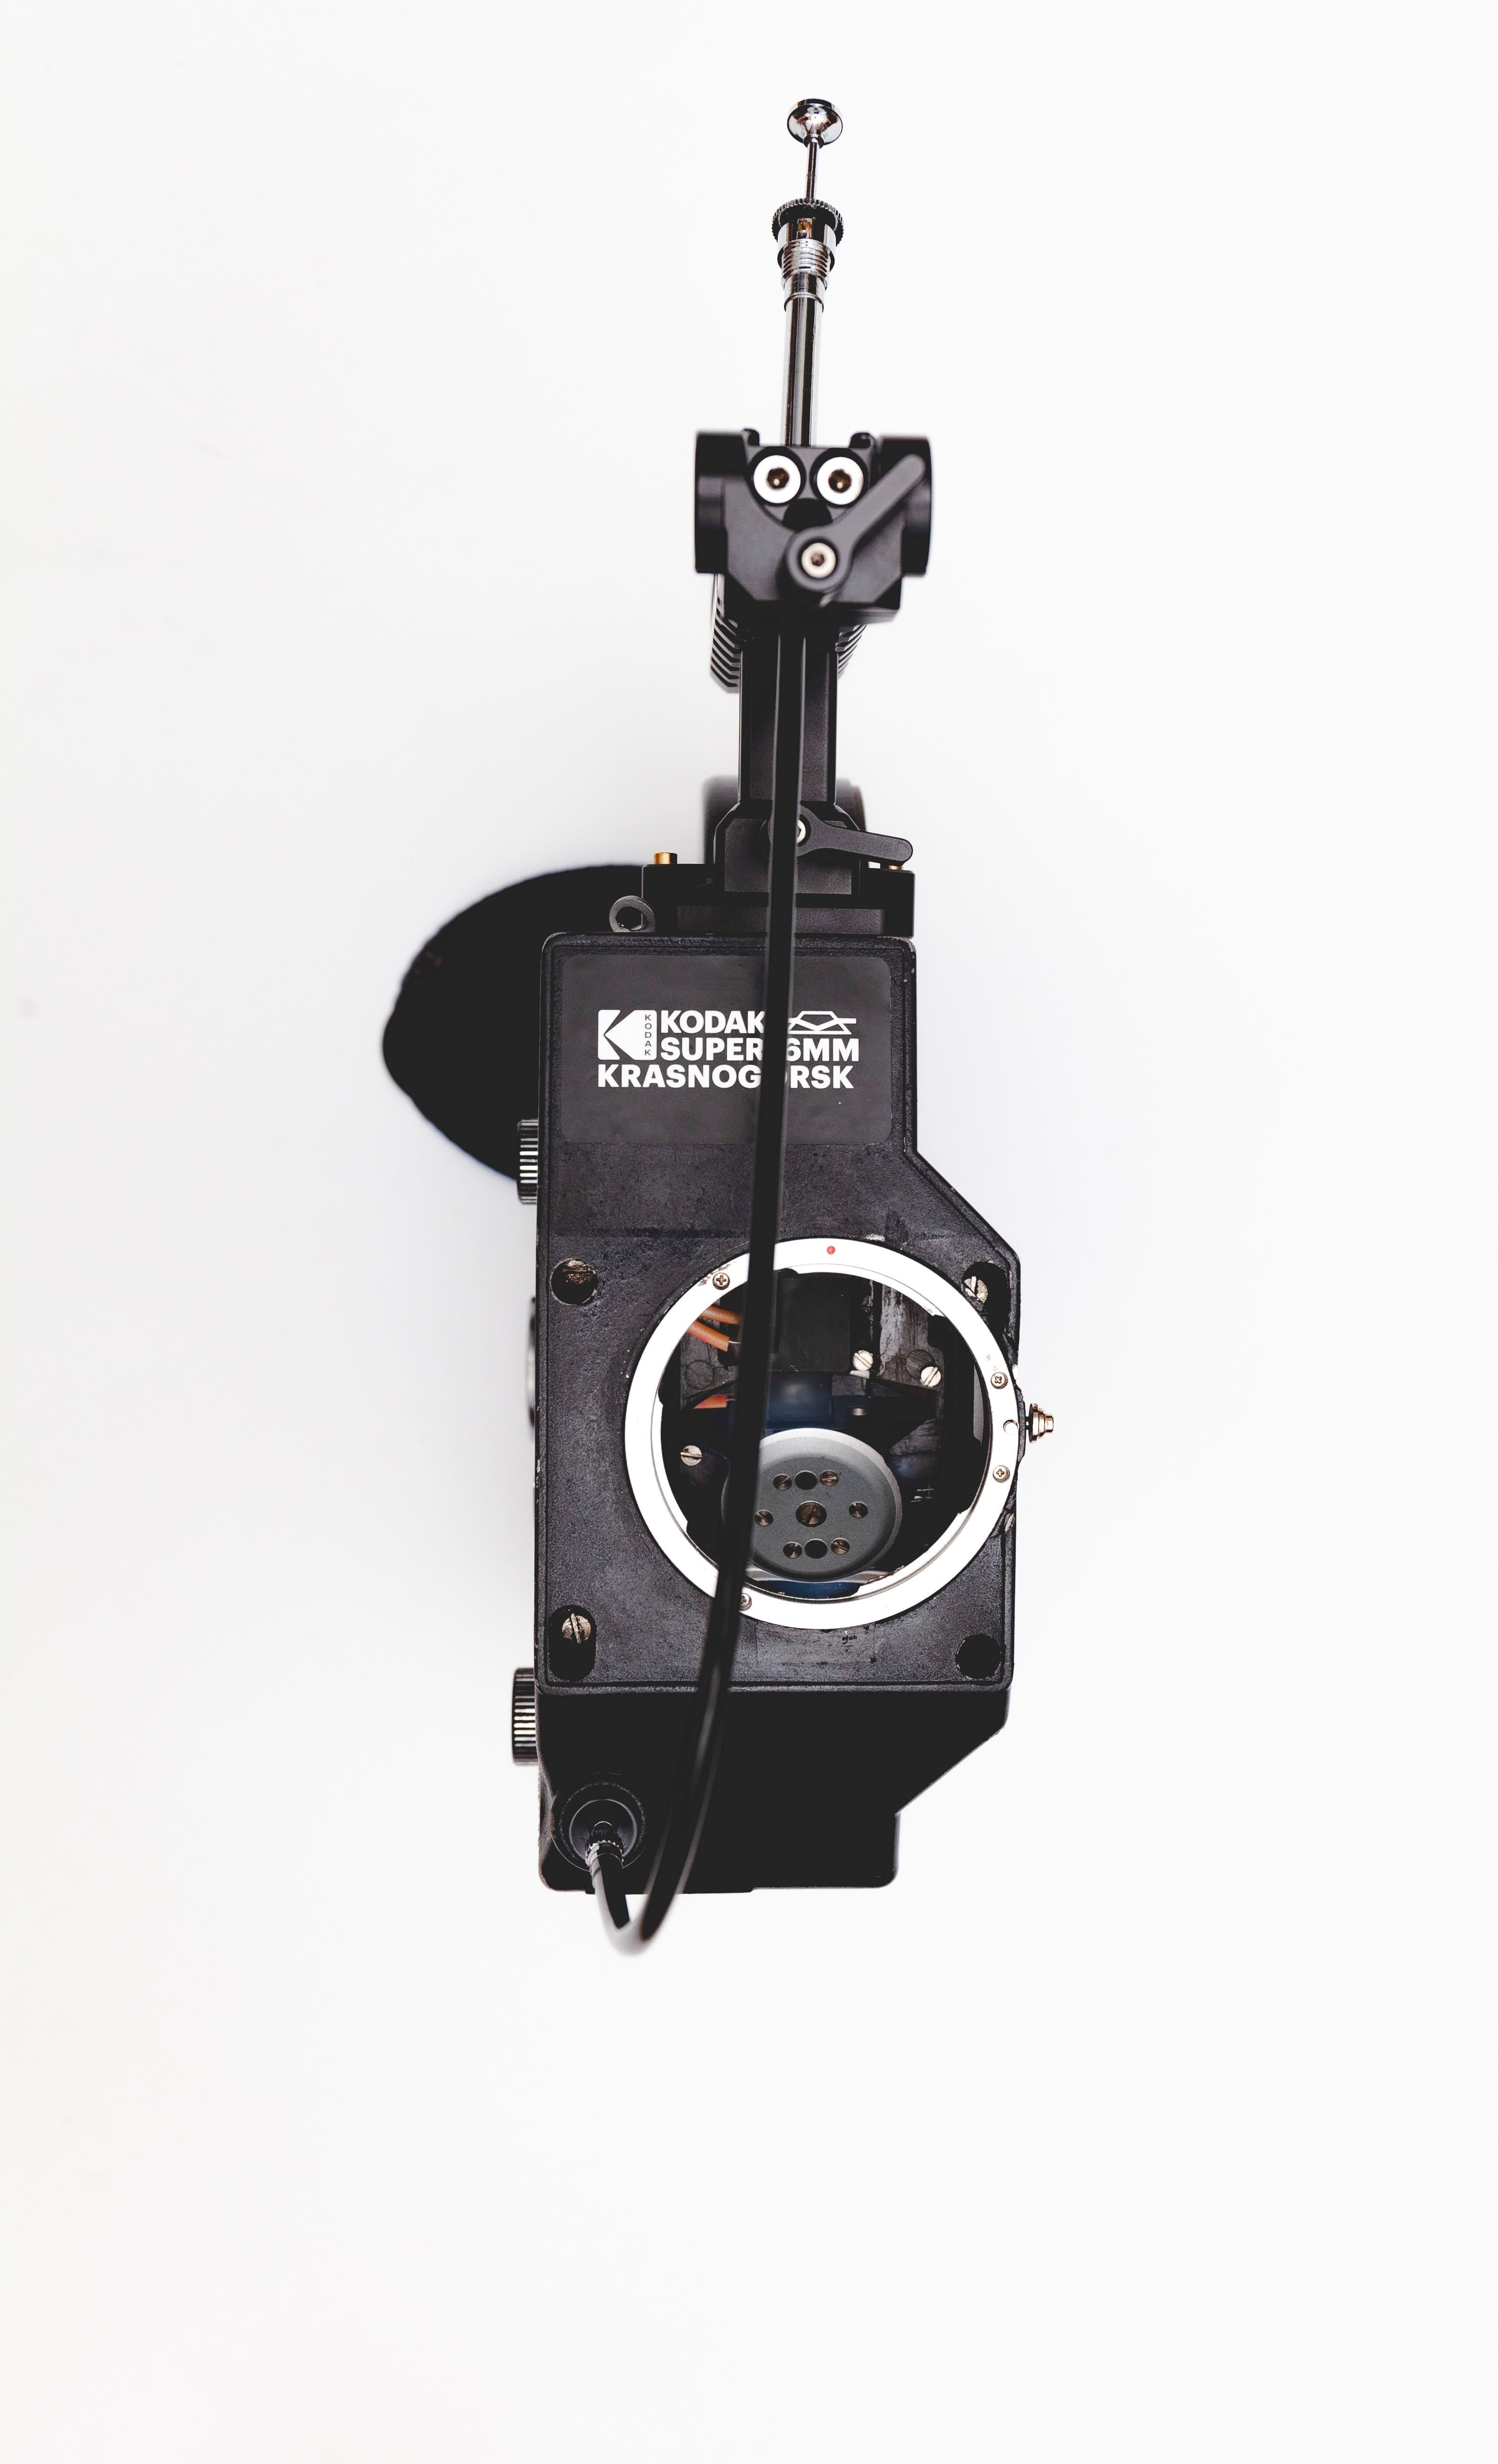 Krasnogorsk K3 SUPER16 MOD z mocowaniem CANON EF kamera filmowa 16mm